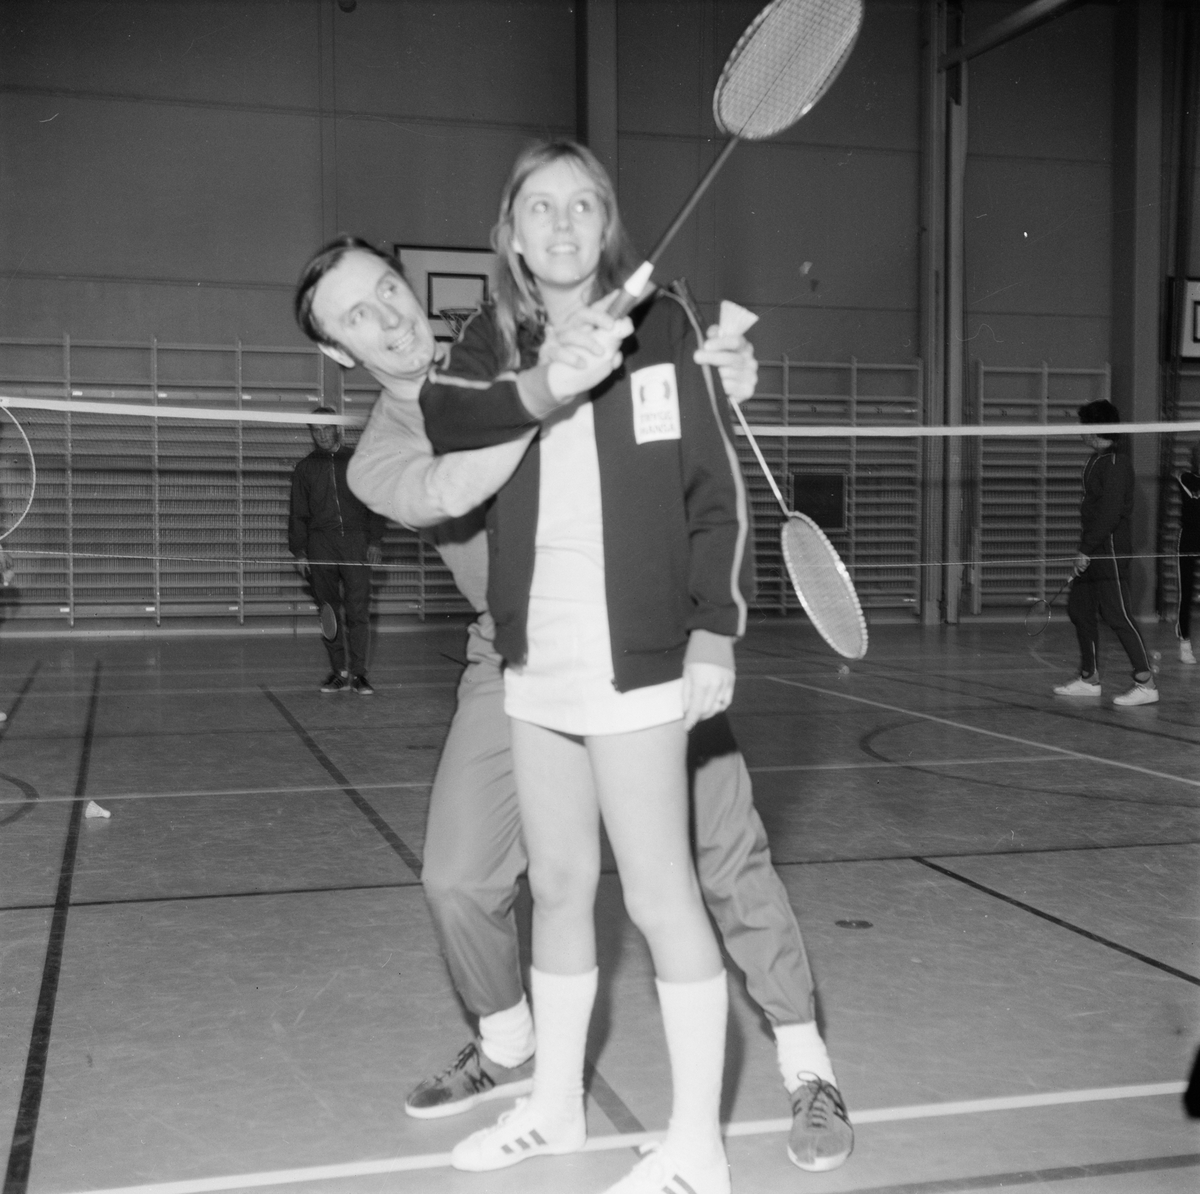 Badmintonkurs, Tierp, Uppland 1972